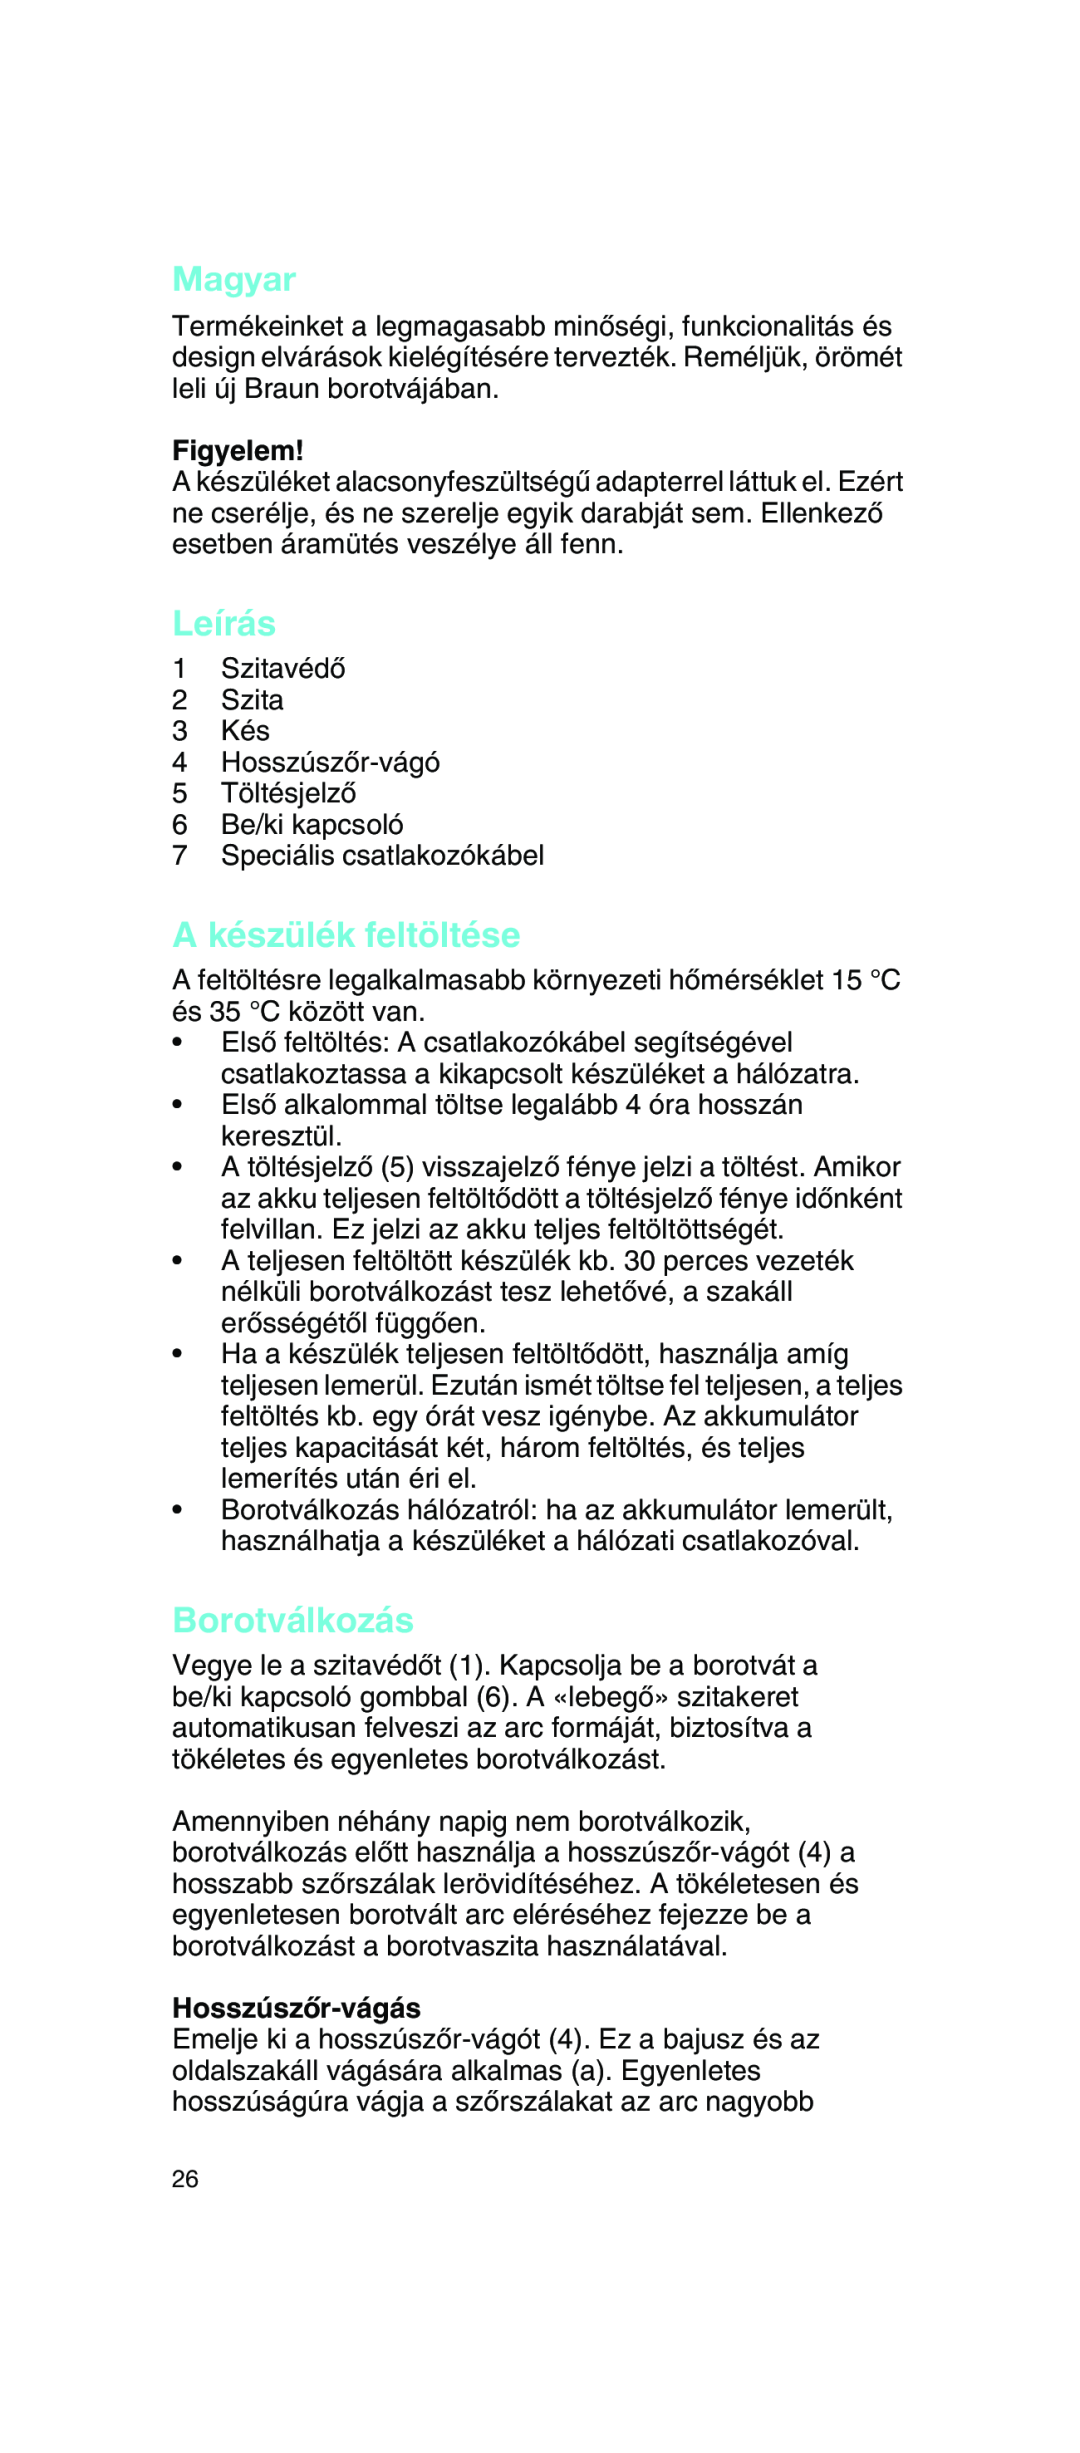 Braun 2675 manual Magyar, Leírás, A készülék feltöltése, Borotválkozás, Figyelem, HosszúszŒr-vágás 